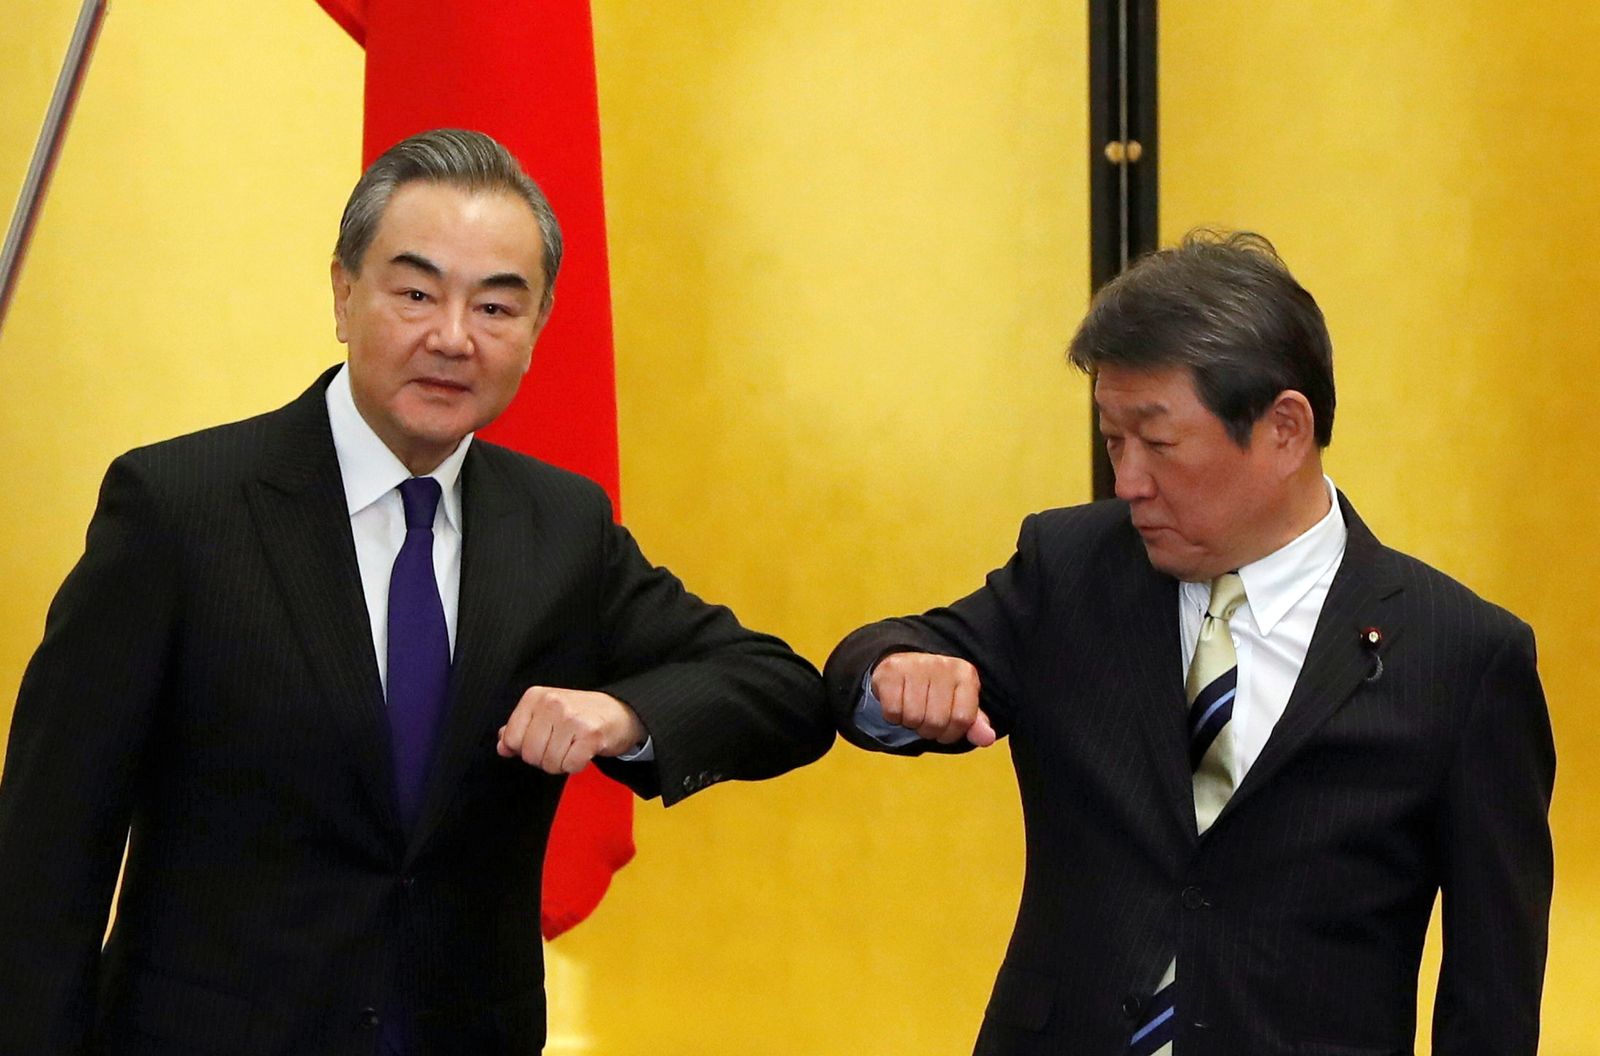 وزيرا الخارجية الياباني توشيميتسو موتيجي (يمين) والصيني وانغ يي خلال لقائهما في طوكيو - 24 نوفمبر 2020 - REUTERS